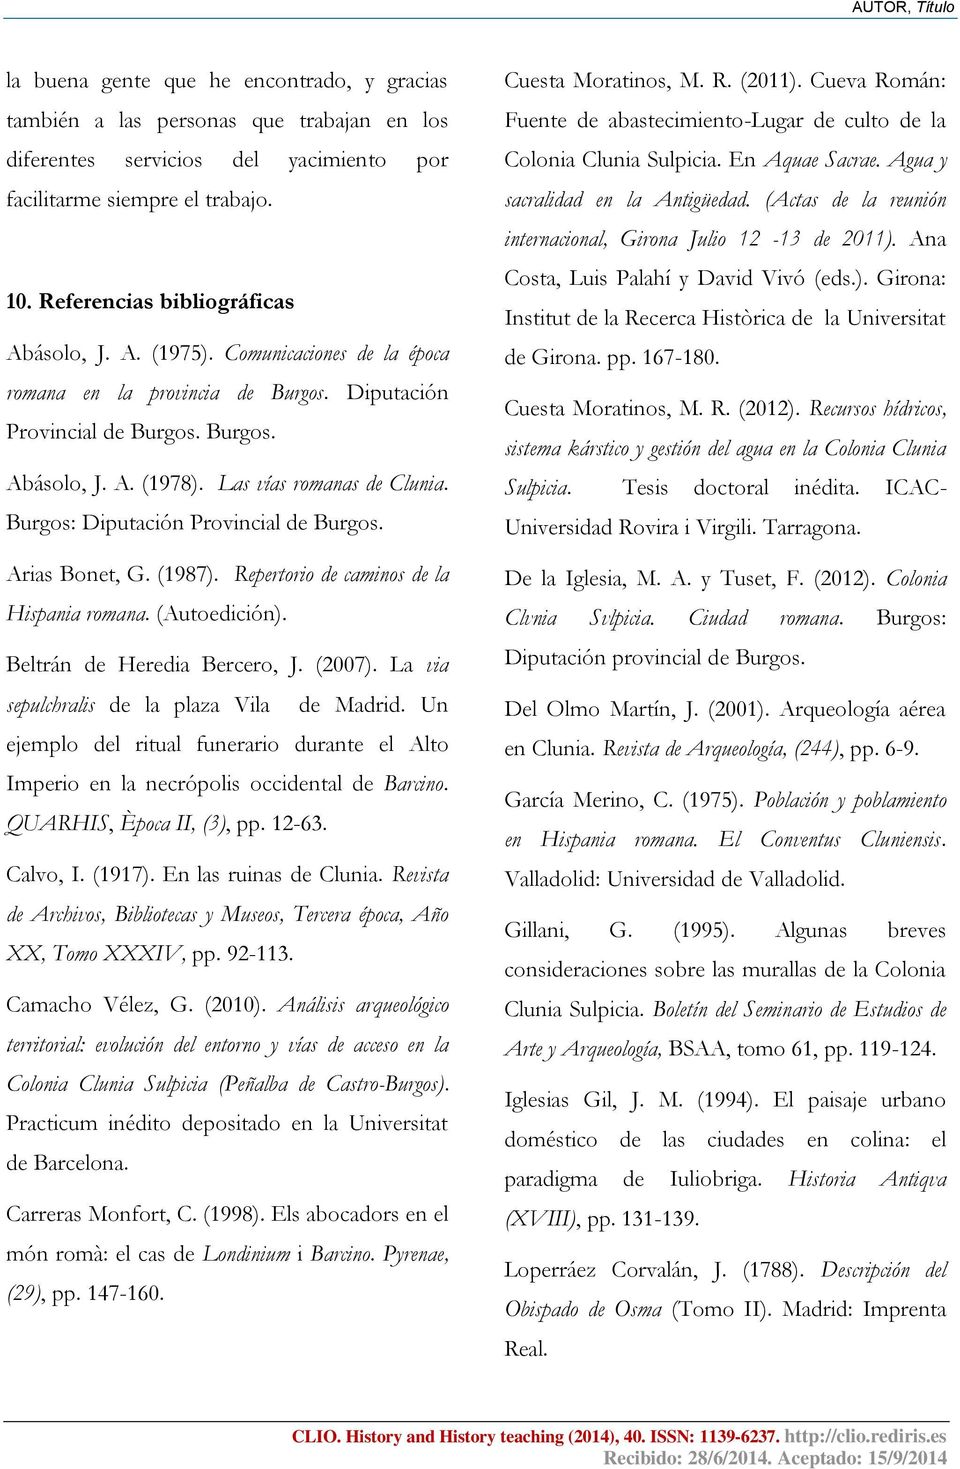 Las vías romanas de Clunia. Burgos: Diputación Provincial de Burgos. Arias Bonet, G. (1987). Repertorio de caminos de la Hispania romana. (Autoedición). Beltrán de Heredia Bercero, J. (2007).